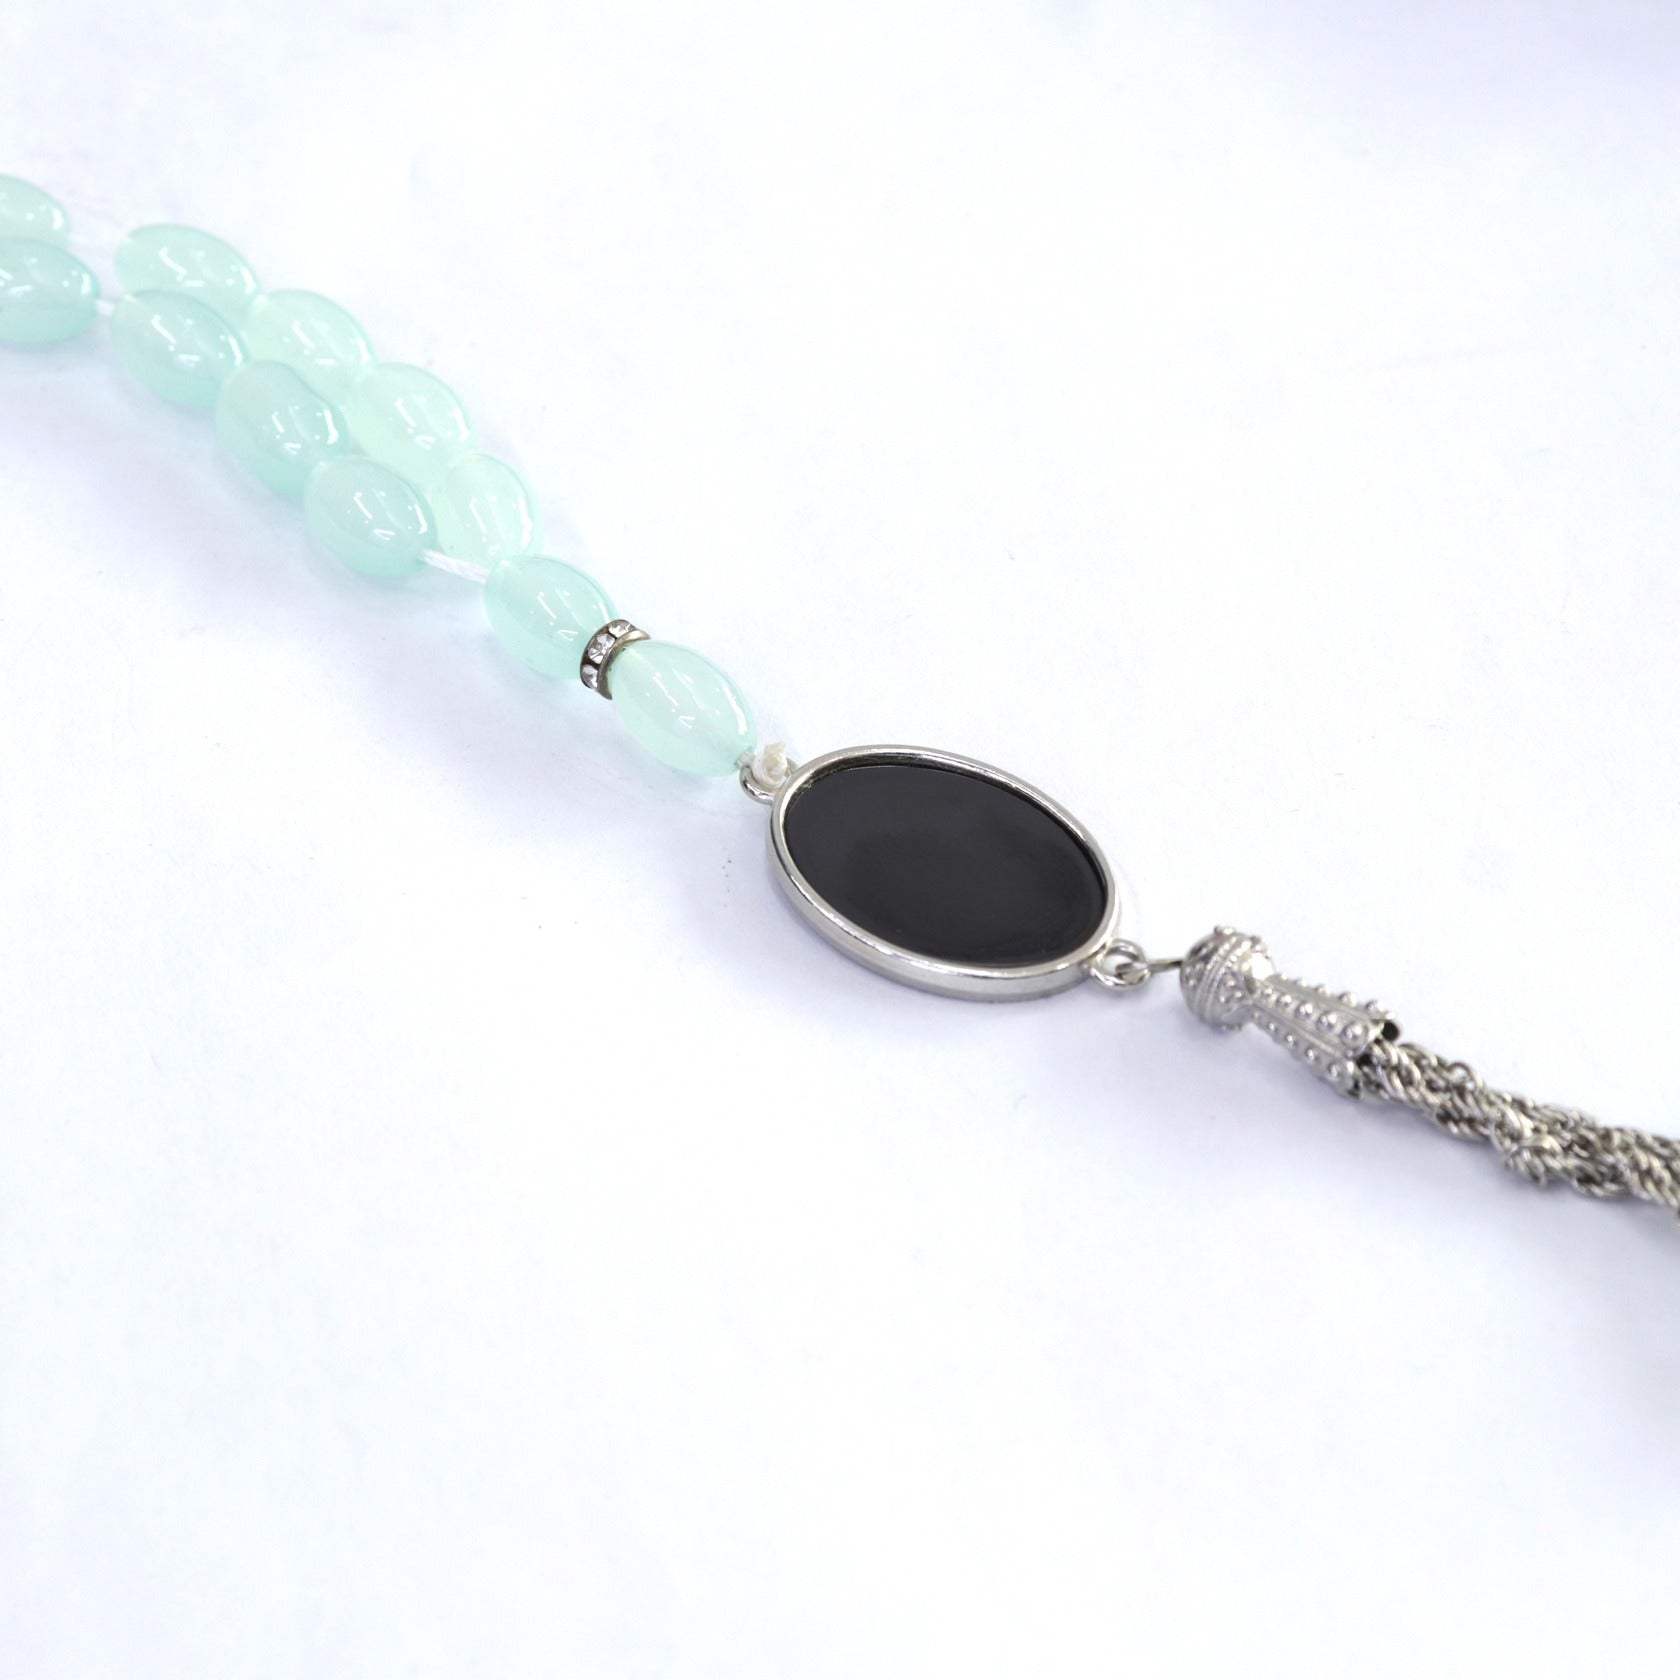 Smooth and Shiny Oval Shape Tasbeeh Misbaha | Muslim Rosary Prayer Beads 33 Stones Zaappy